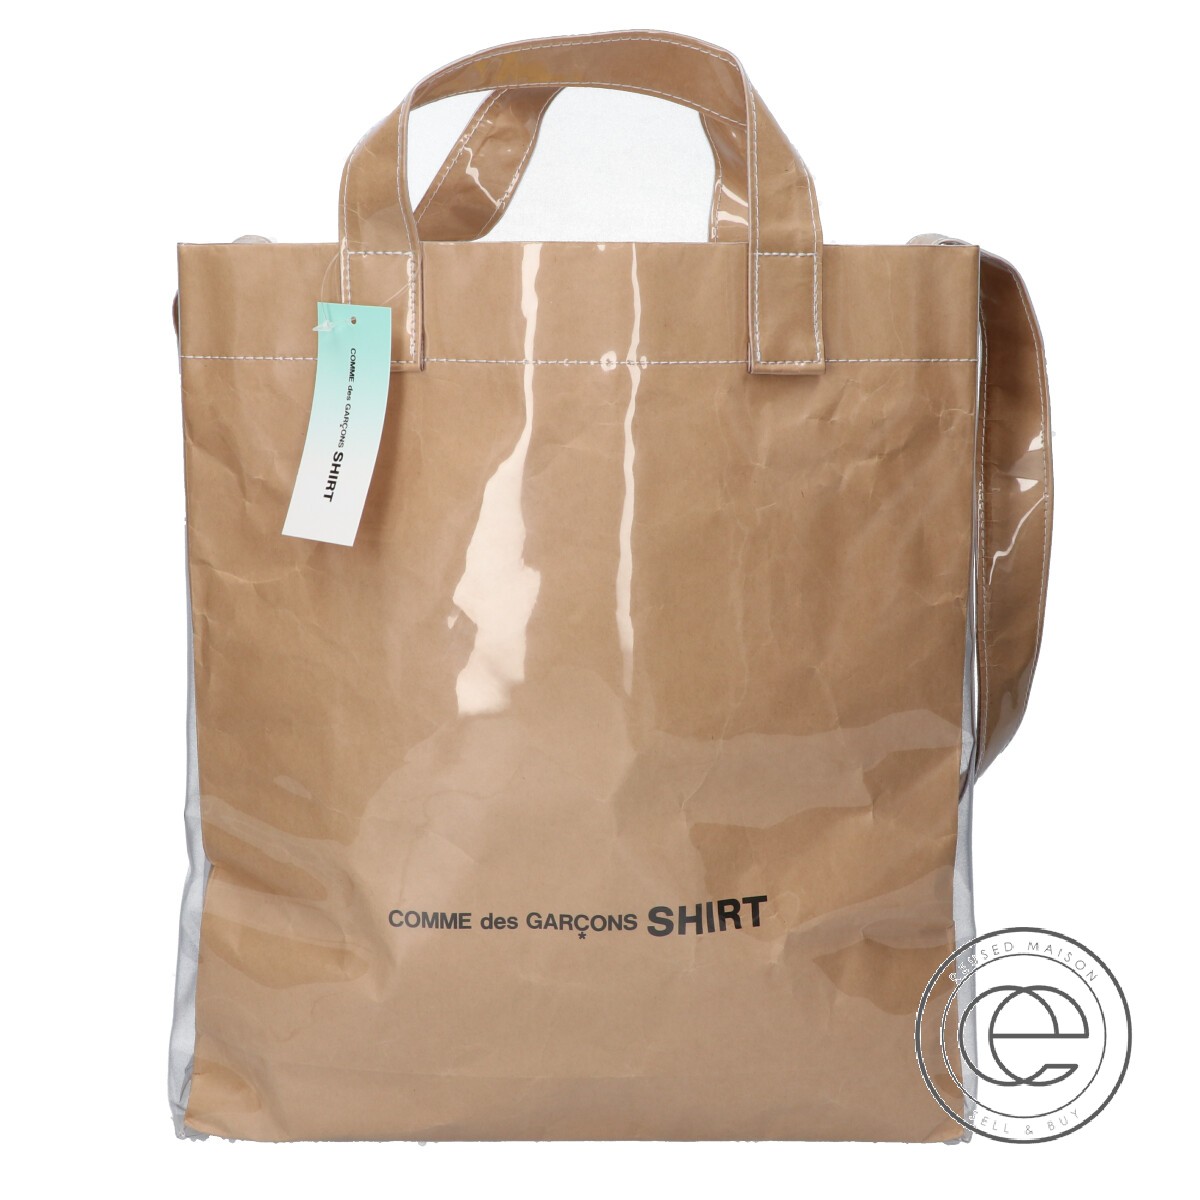 CDG BLACK MARKET Comme Des Garcons PVC Paper Black Handbag Tote Bag Shopping Bag